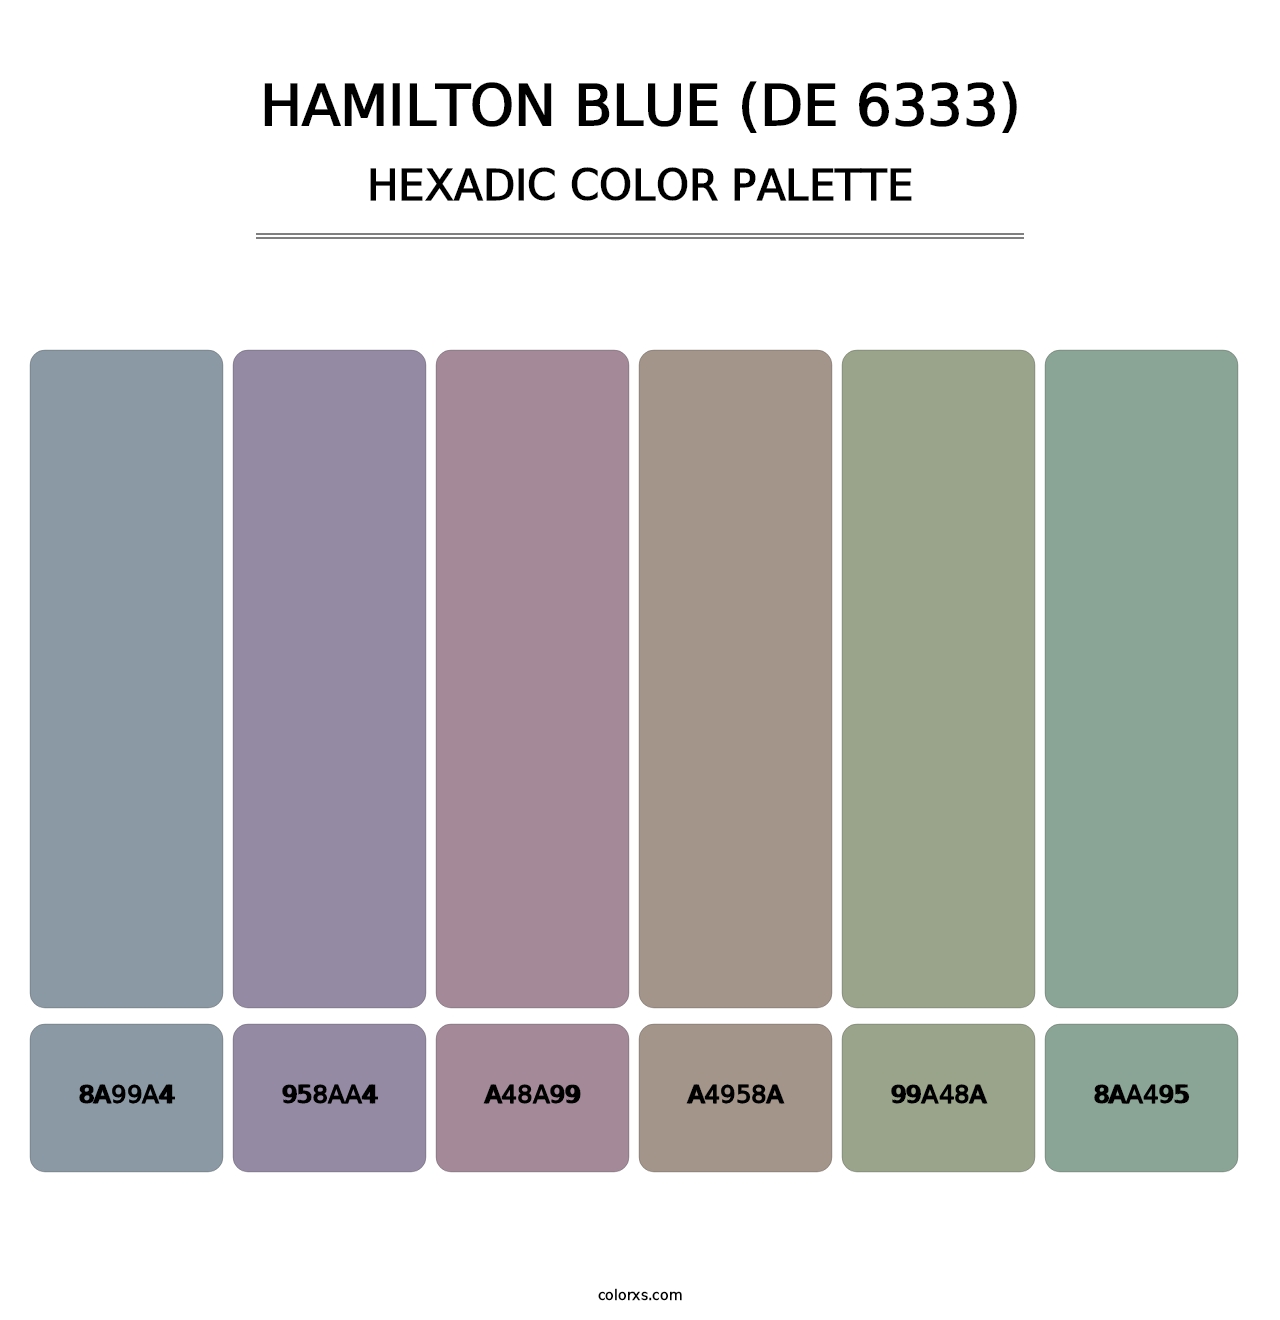 Hamilton Blue (DE 6333) - Hexadic Color Palette